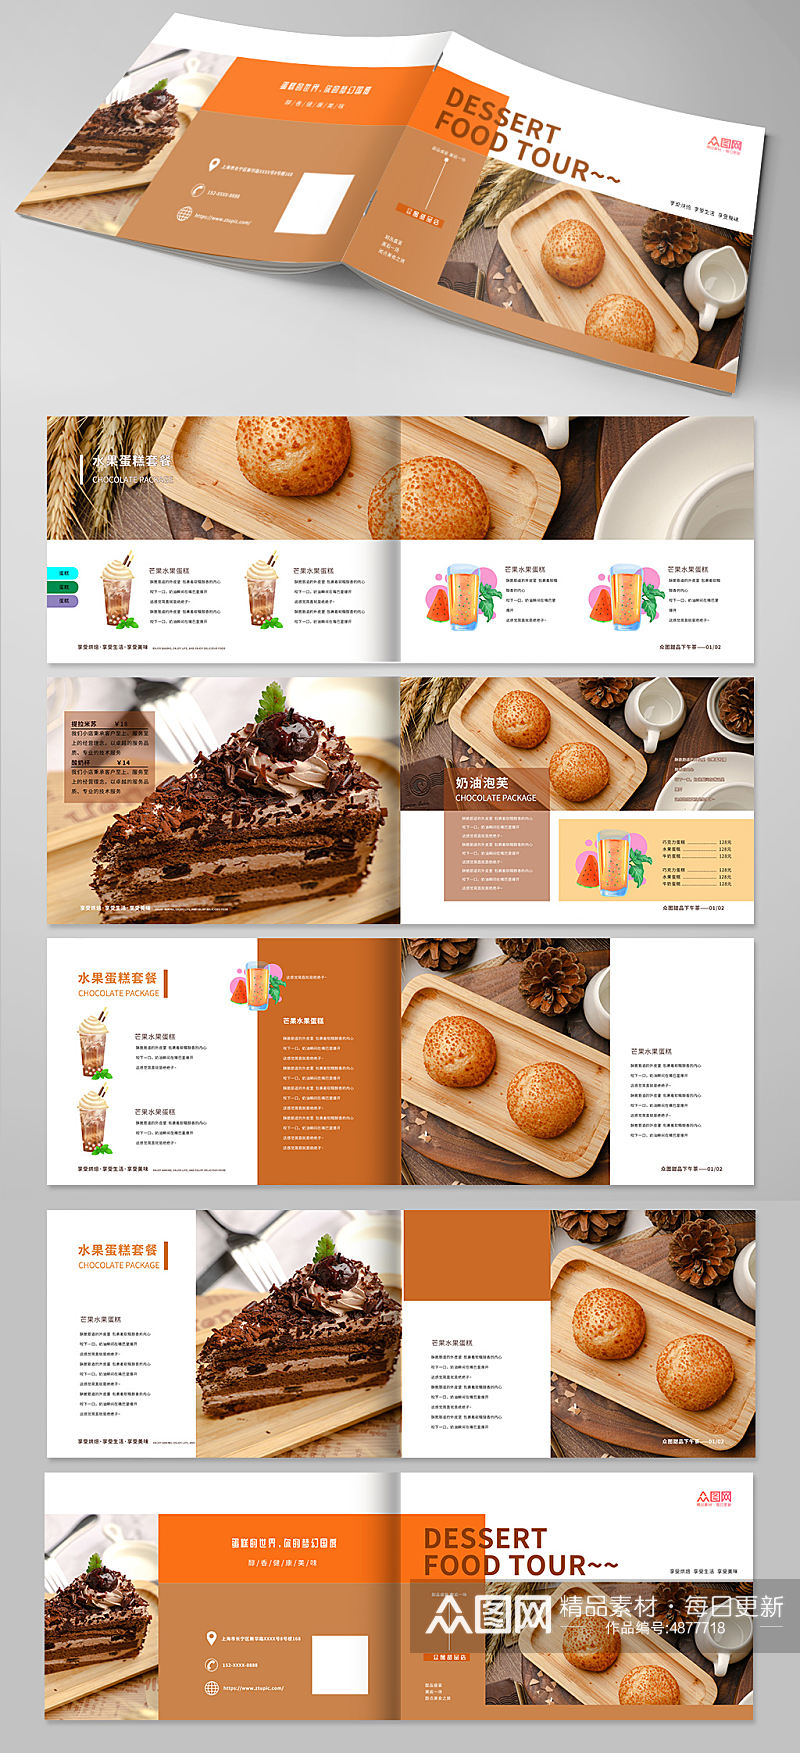 橘色甜点甜品蛋糕下午茶美食宣传册画册素材